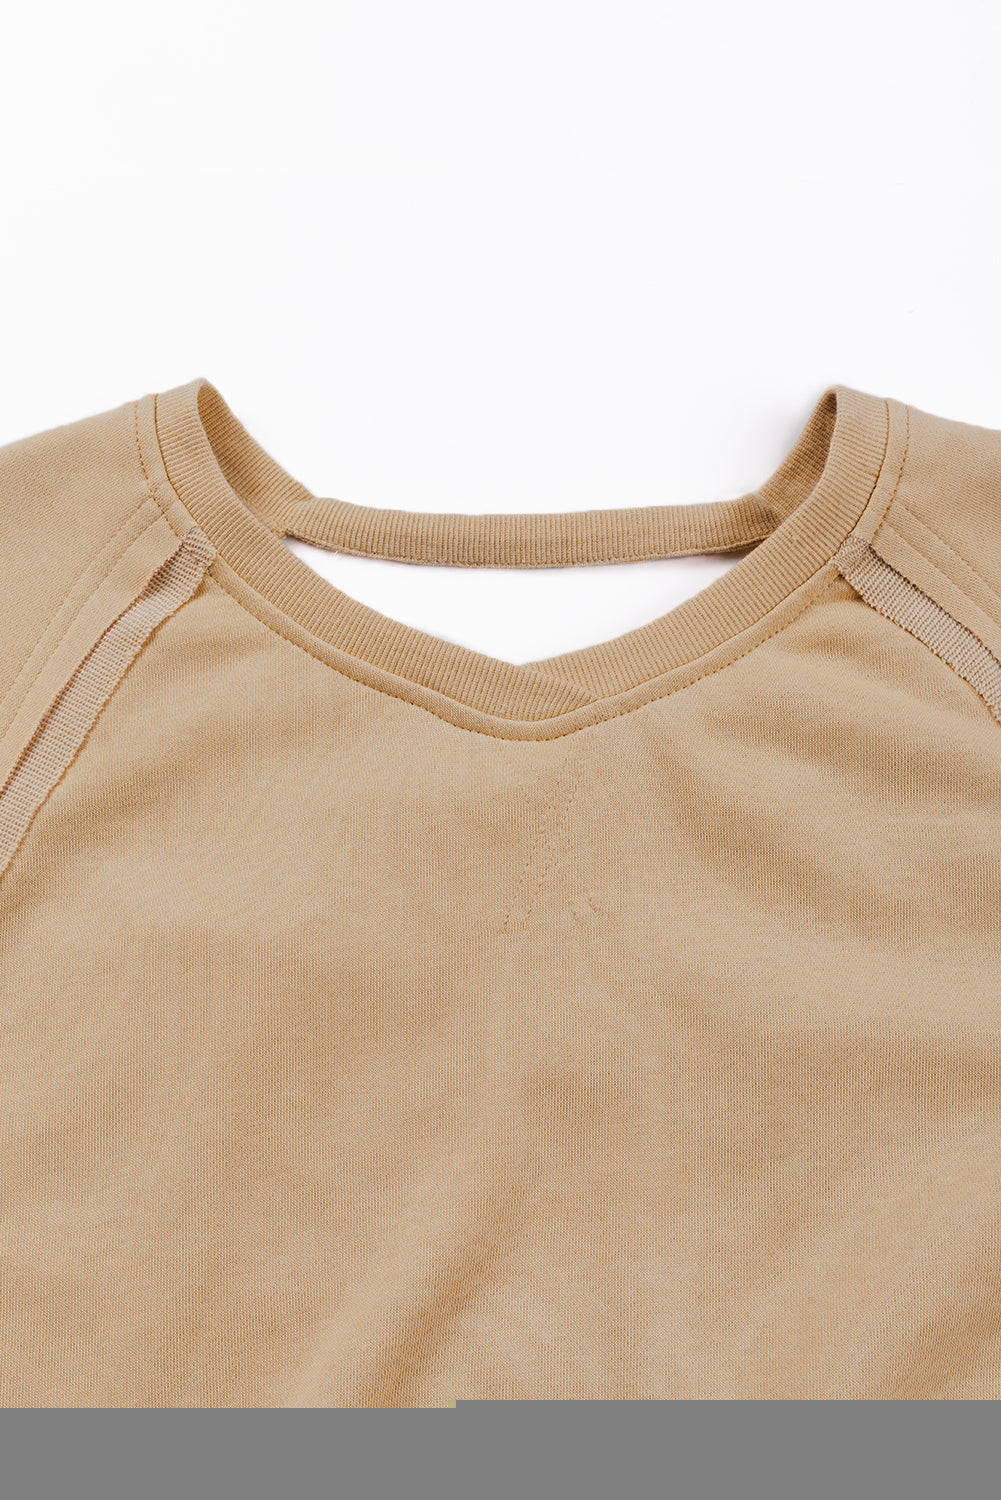 Sweat-shirt en treillis de couleur unie beige français clair, dos ajouré